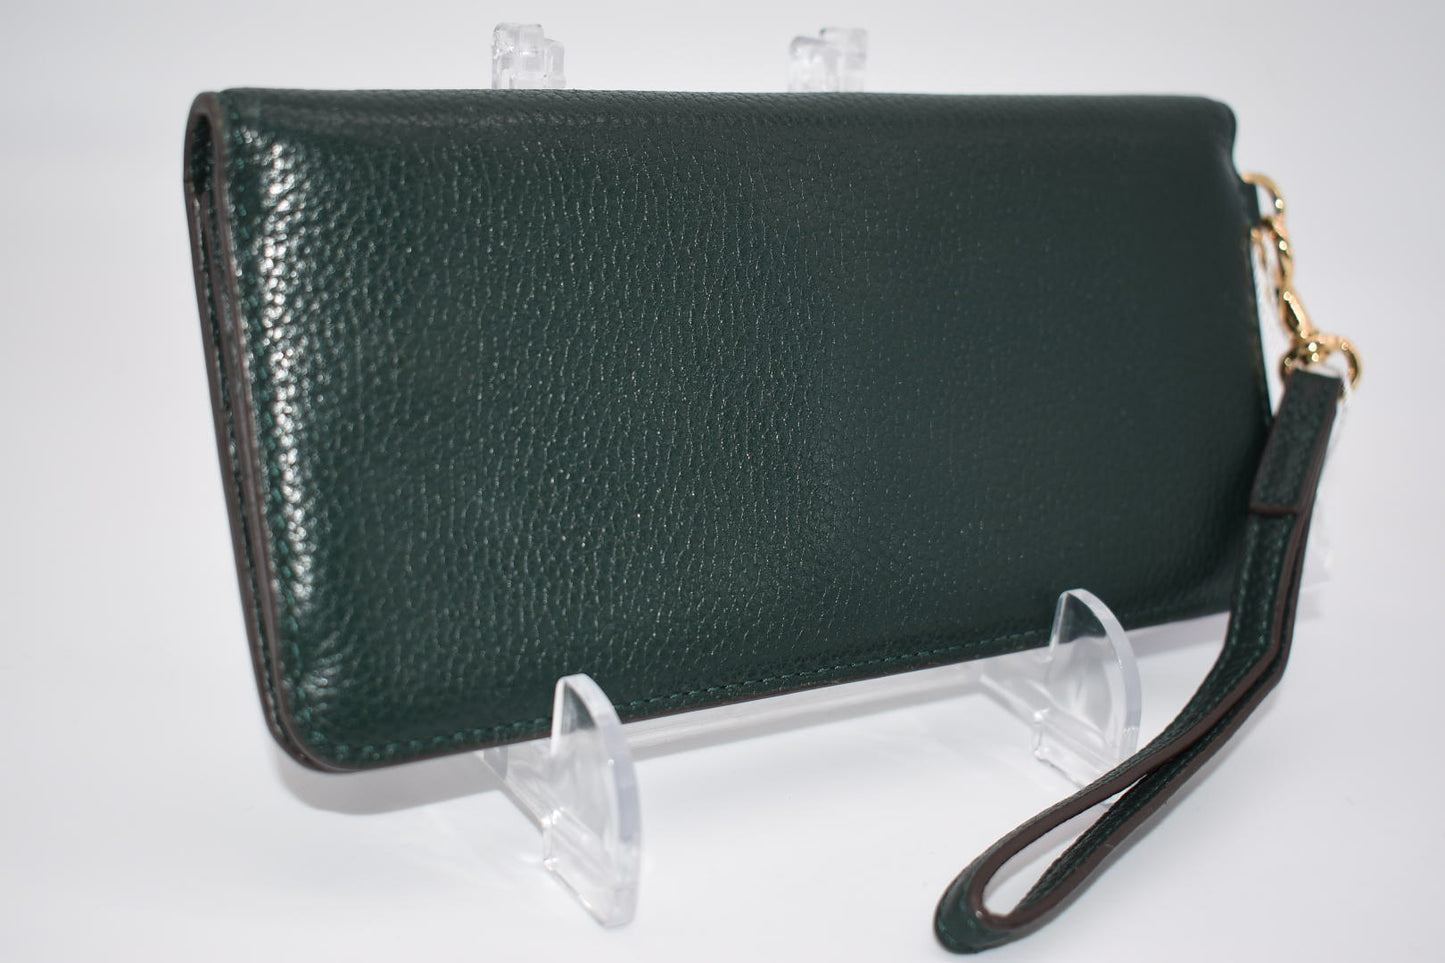 Tory Burch Pebble Leather Wallet/ Wristlet in Jitney Green